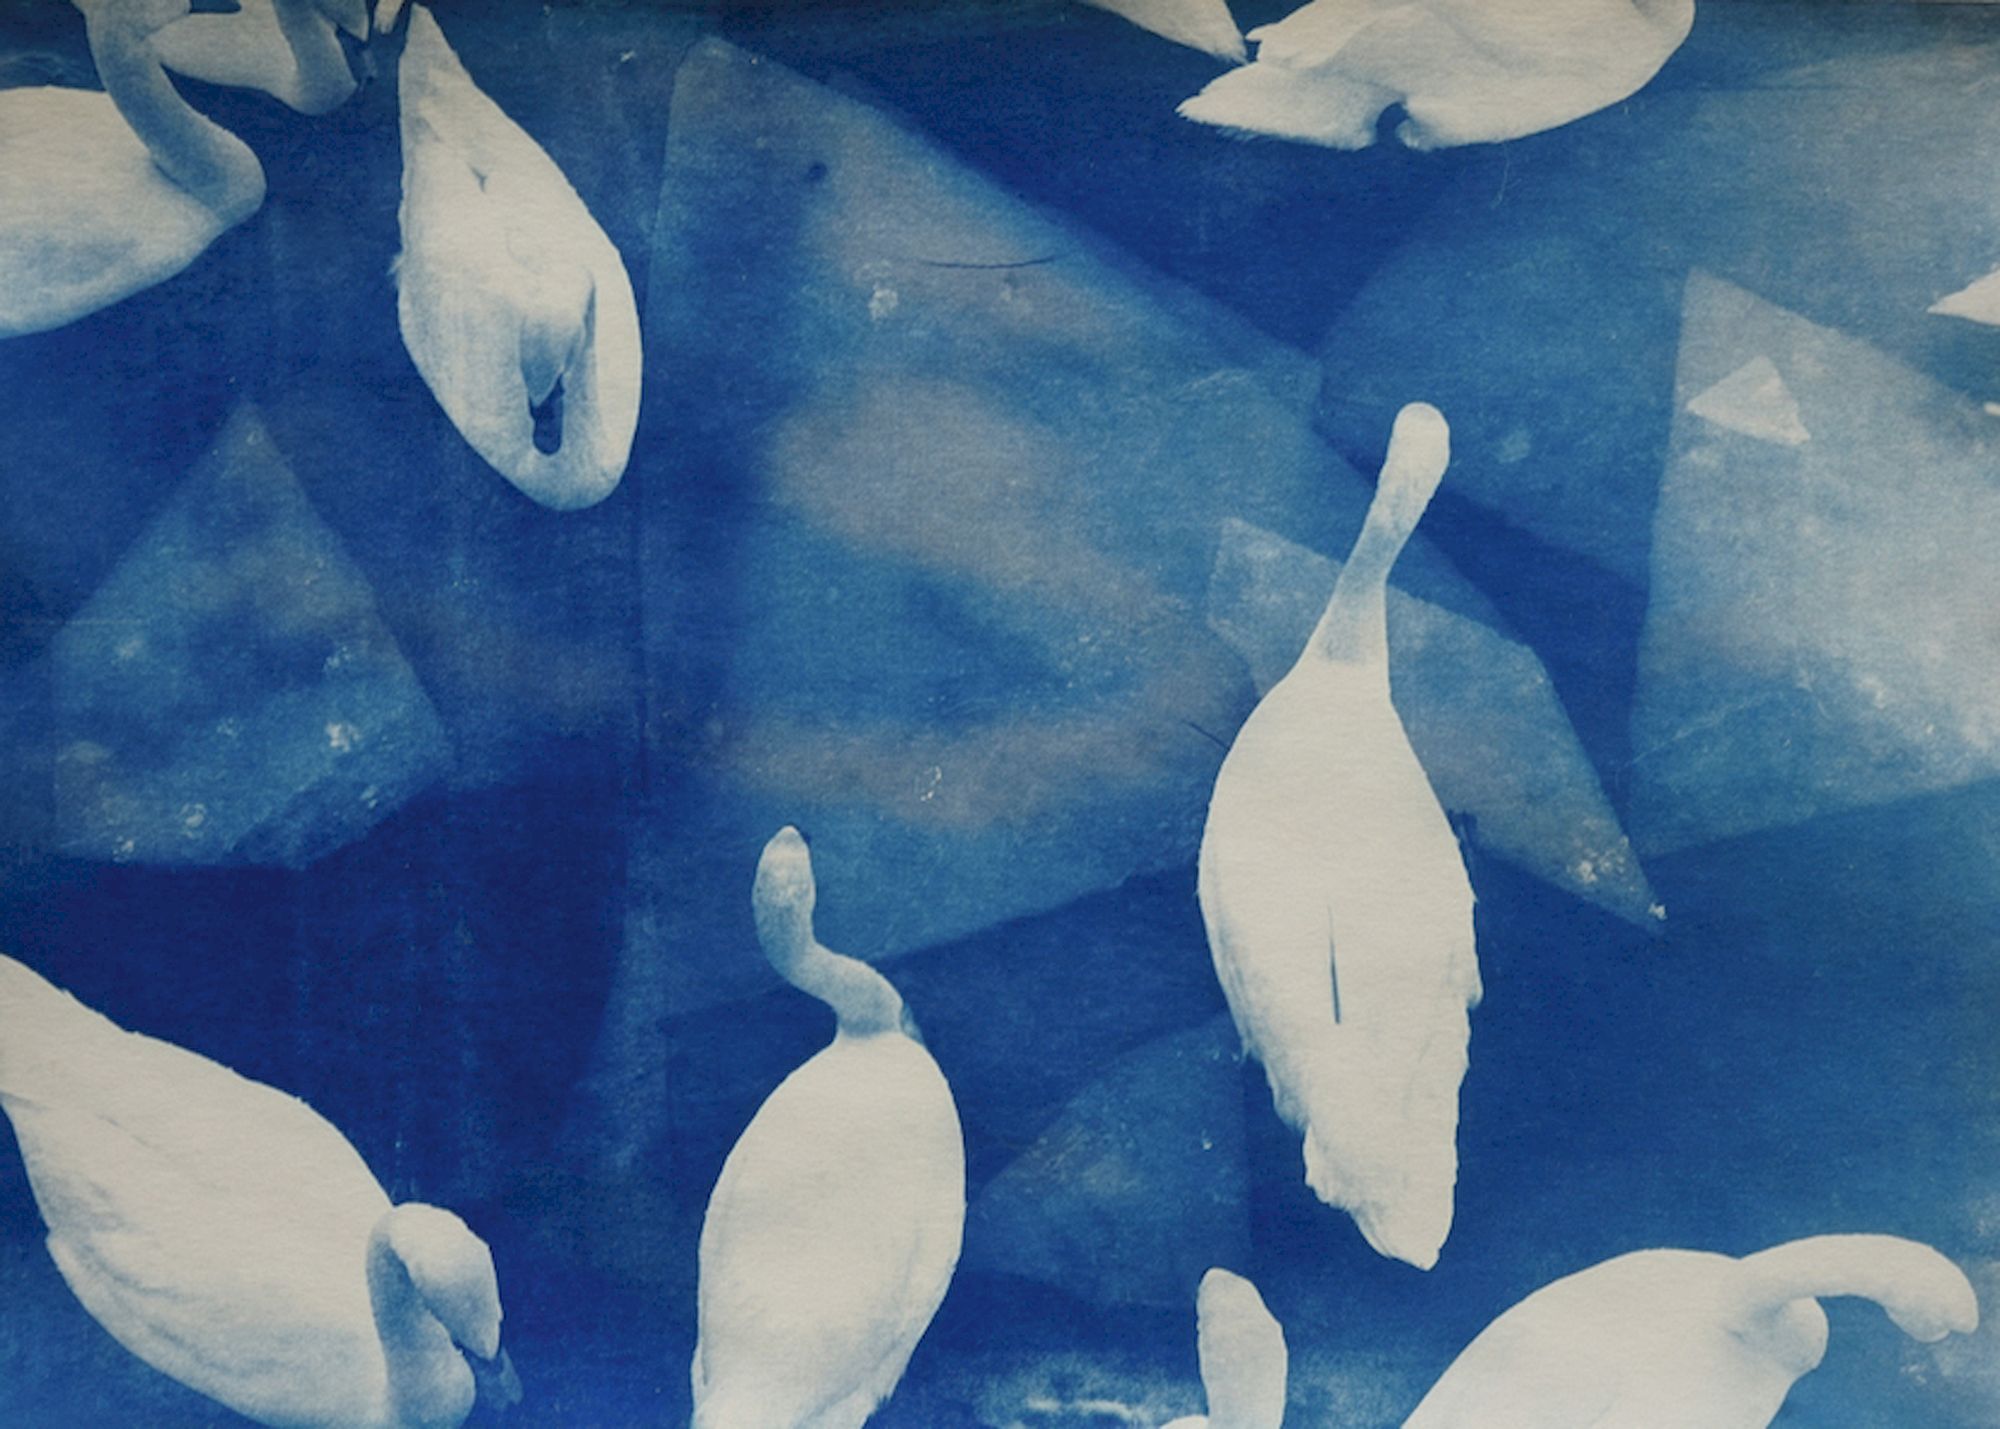 Eine Gruppe weißer Schwäne von oben auf dem Wasser. Es sind Eisschollen zu sehen. Das Bild ist ganz blau, ein so genannter Blaudruck.